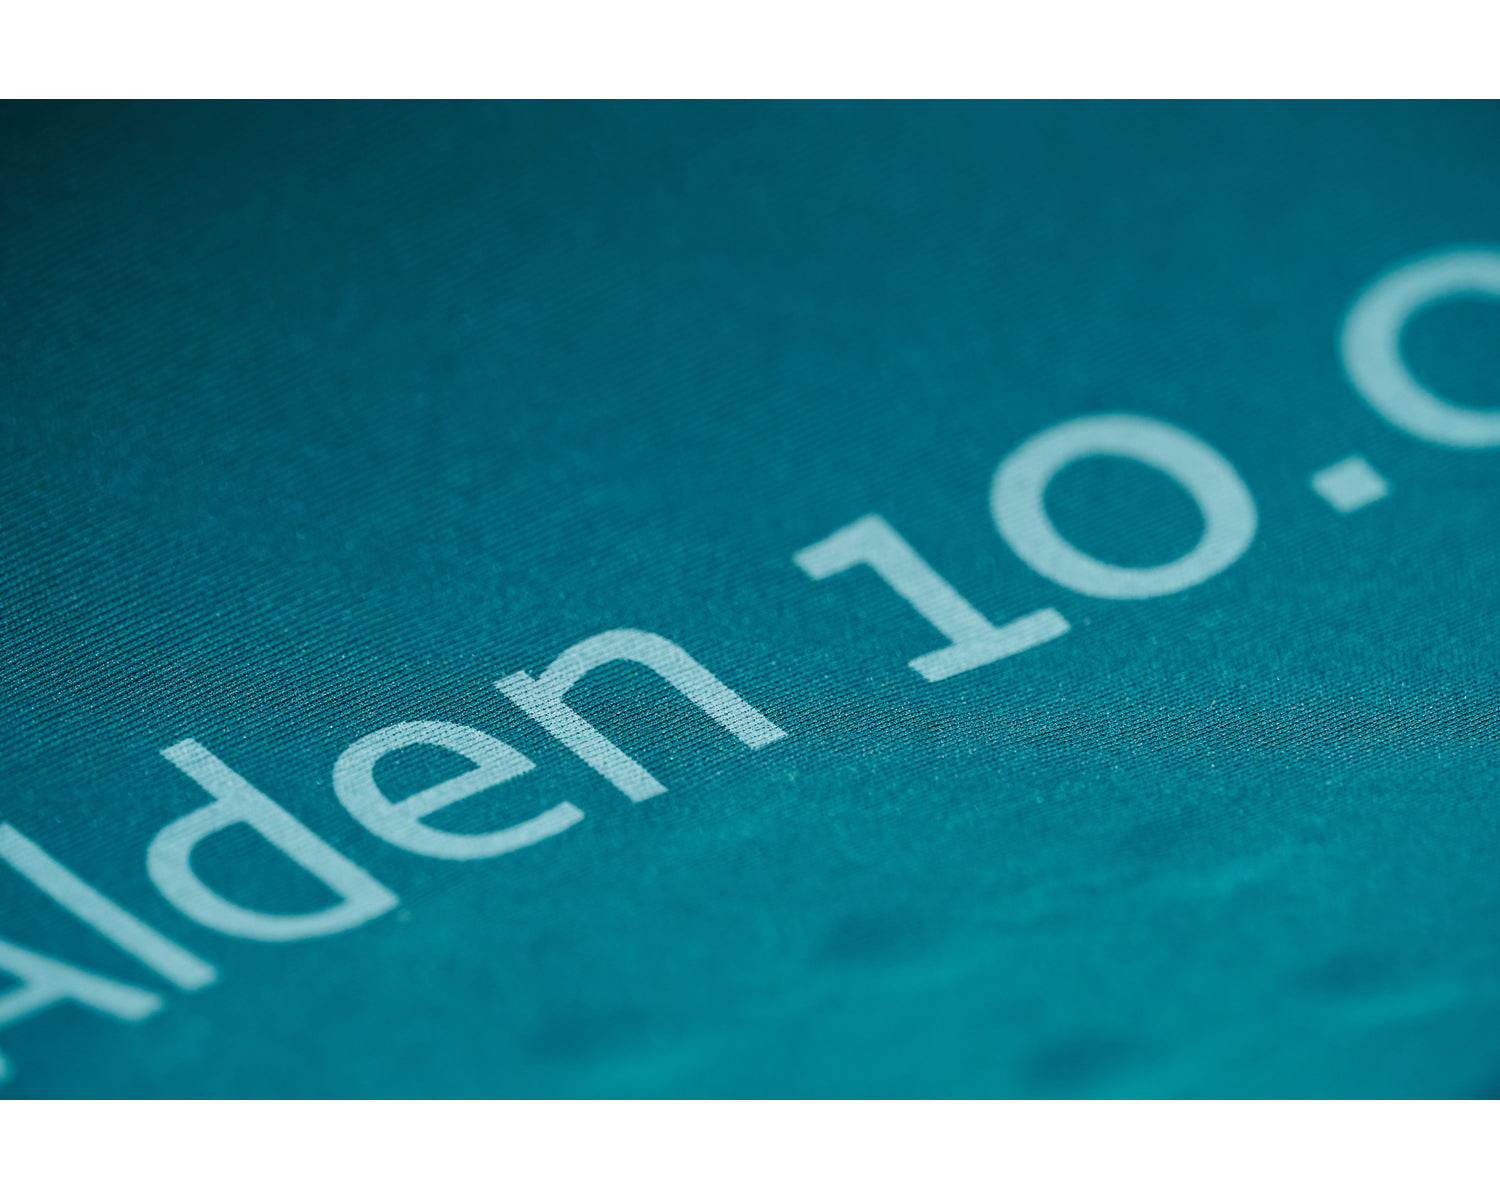 Alden 10.0 XL mat - Reflecting Pond